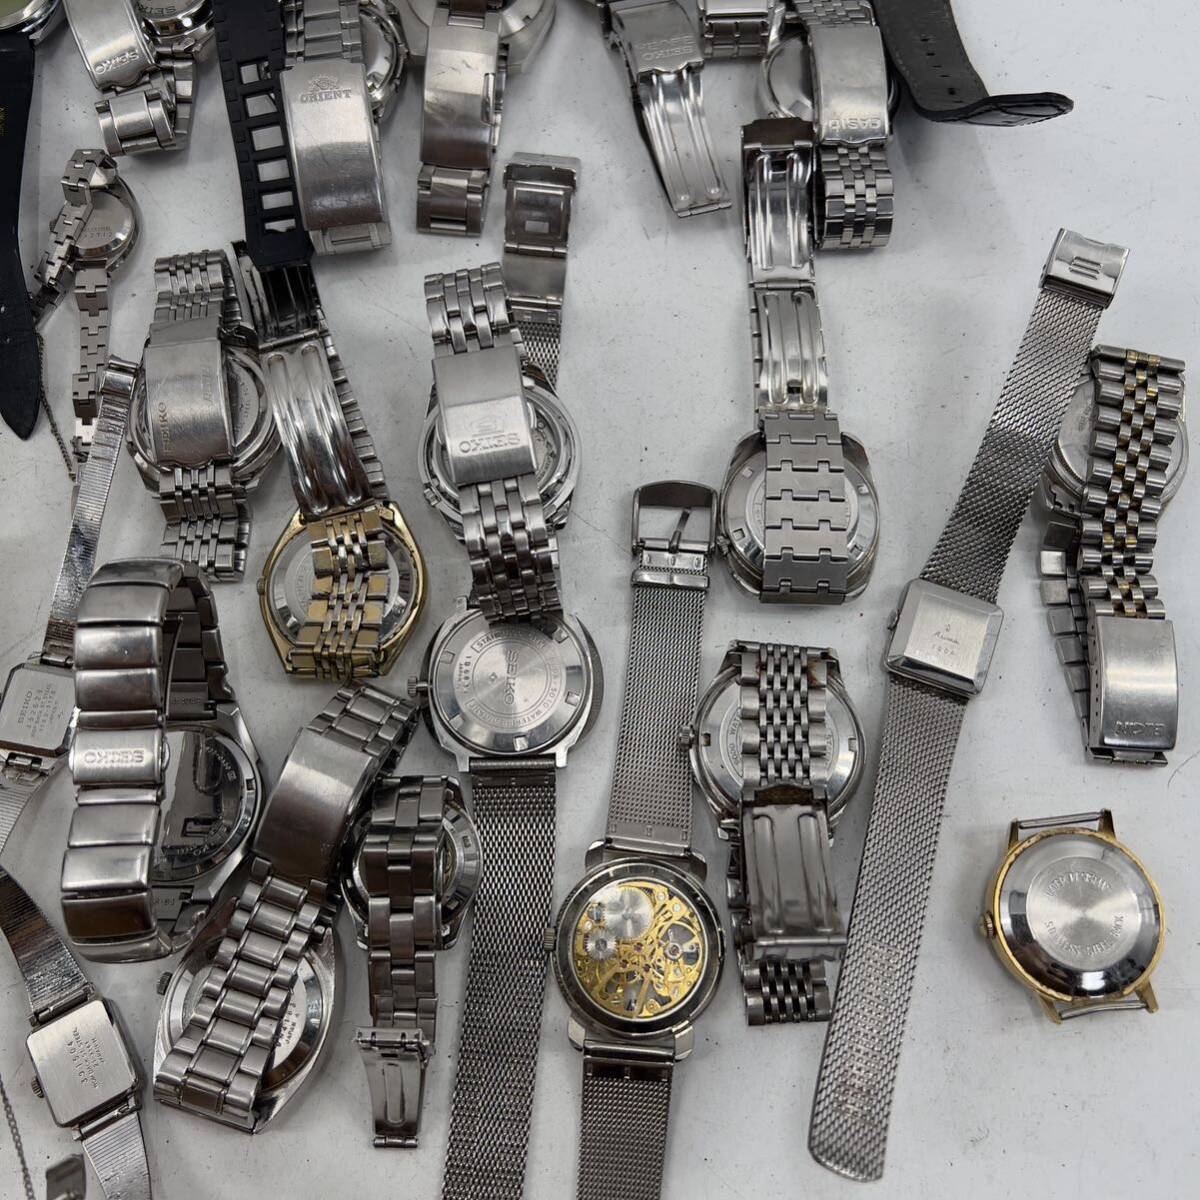  продажа комплектом самозаводящиеся часы механический завод кинетический AGS часы LONGINES SEIKO CITIZEN TISSOT ORIENT античный бренд мода различный 50шт.